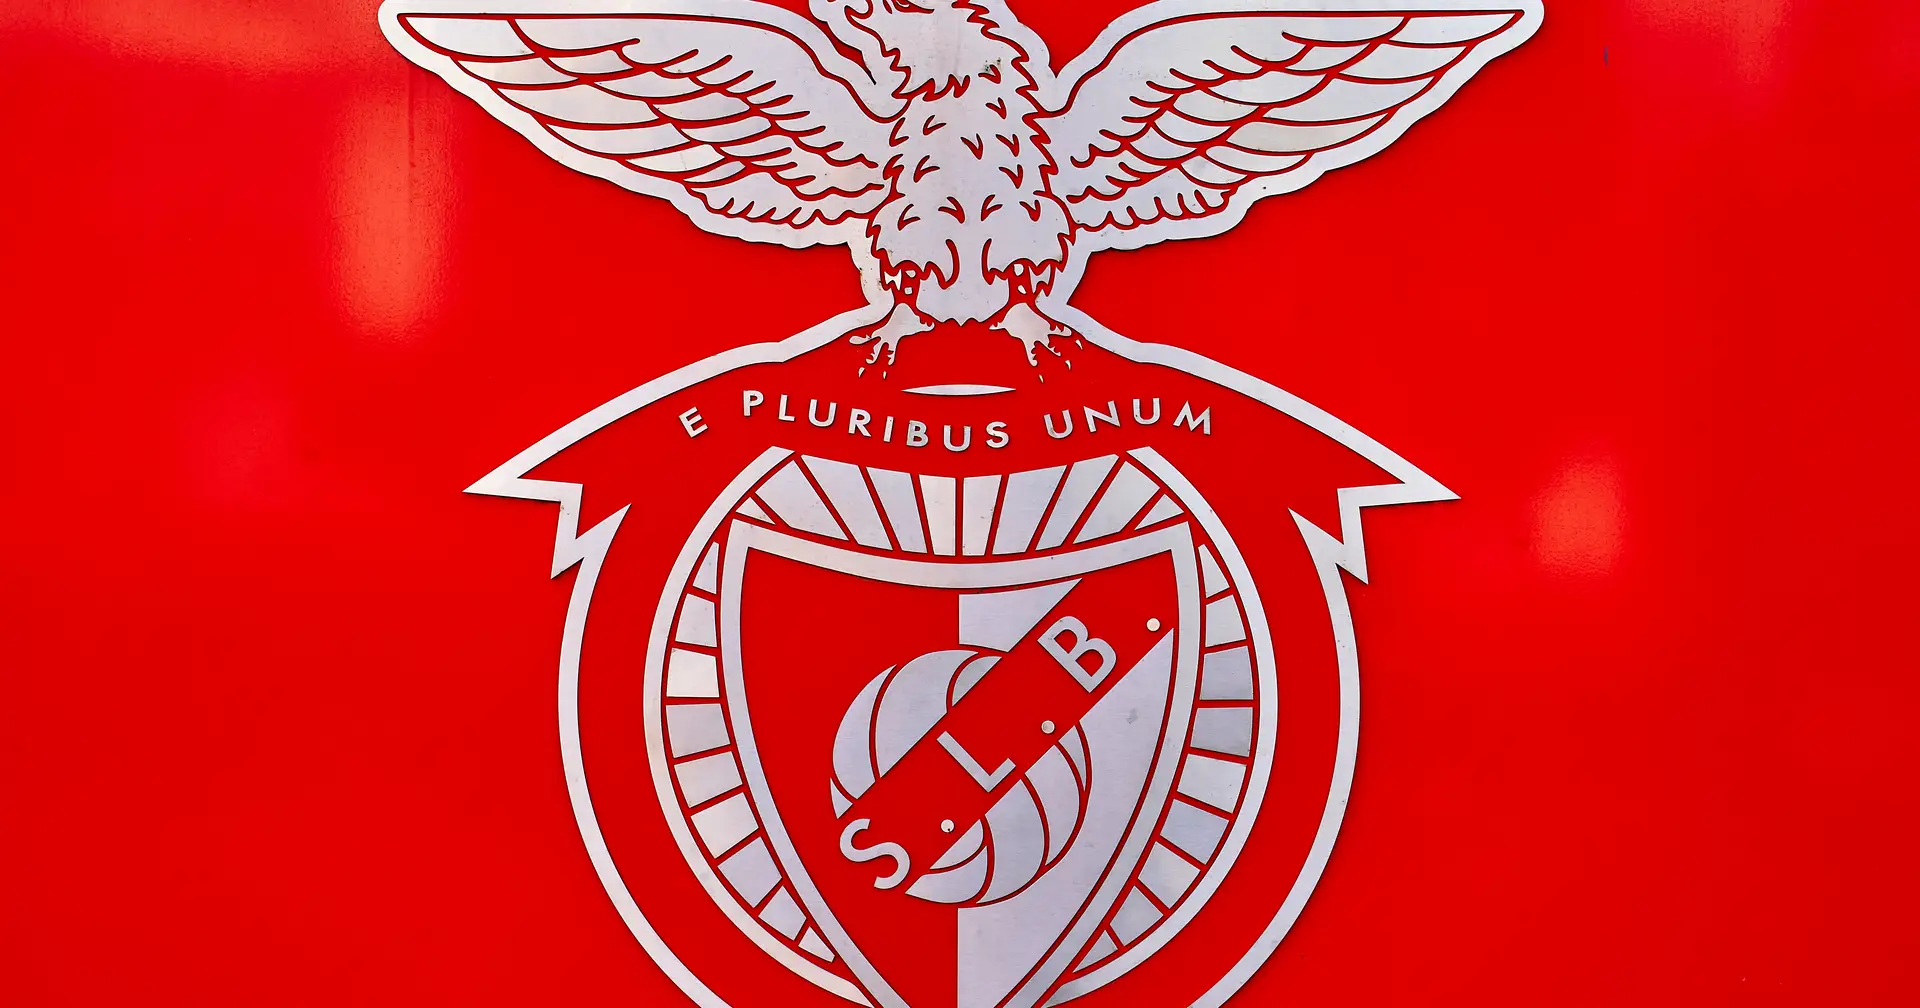 Dia de sorteios. FC Porto, Benfica, Sporting e SC Braga conhecem  adversários das competições europeias